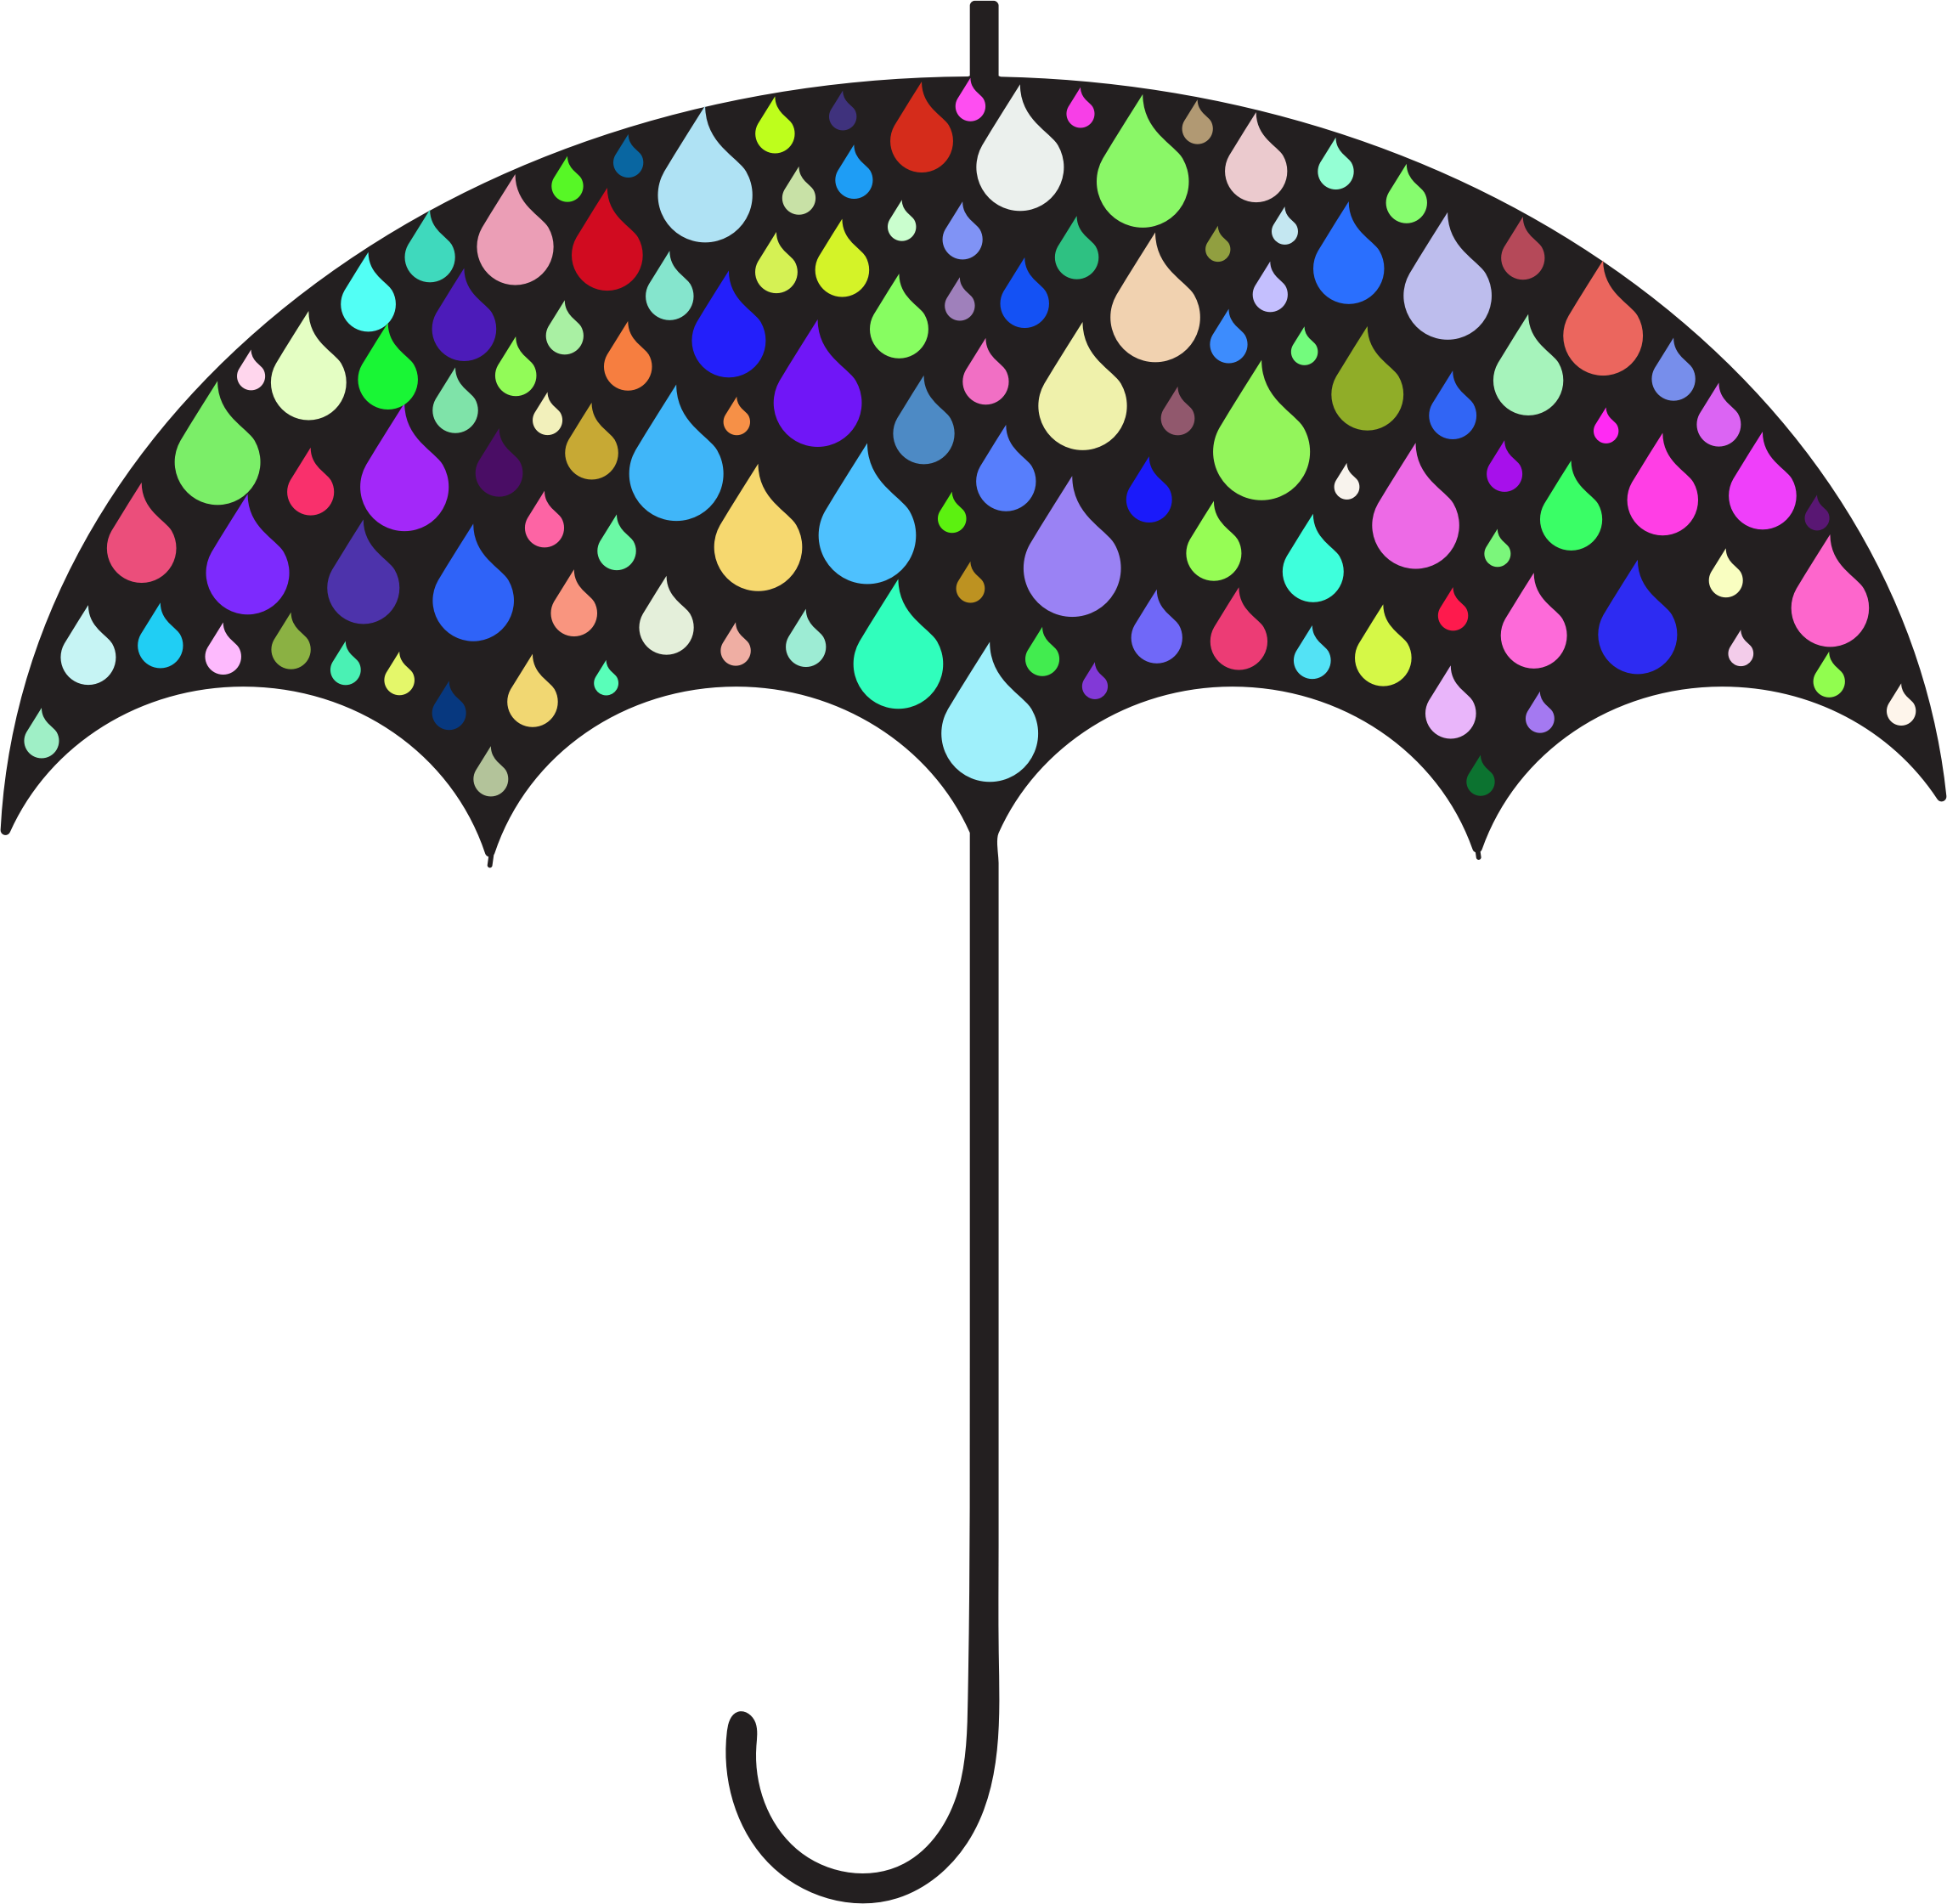 Rain Drops Umbrella Silhouette - ! 5'x7'area Rug (2292x2241)